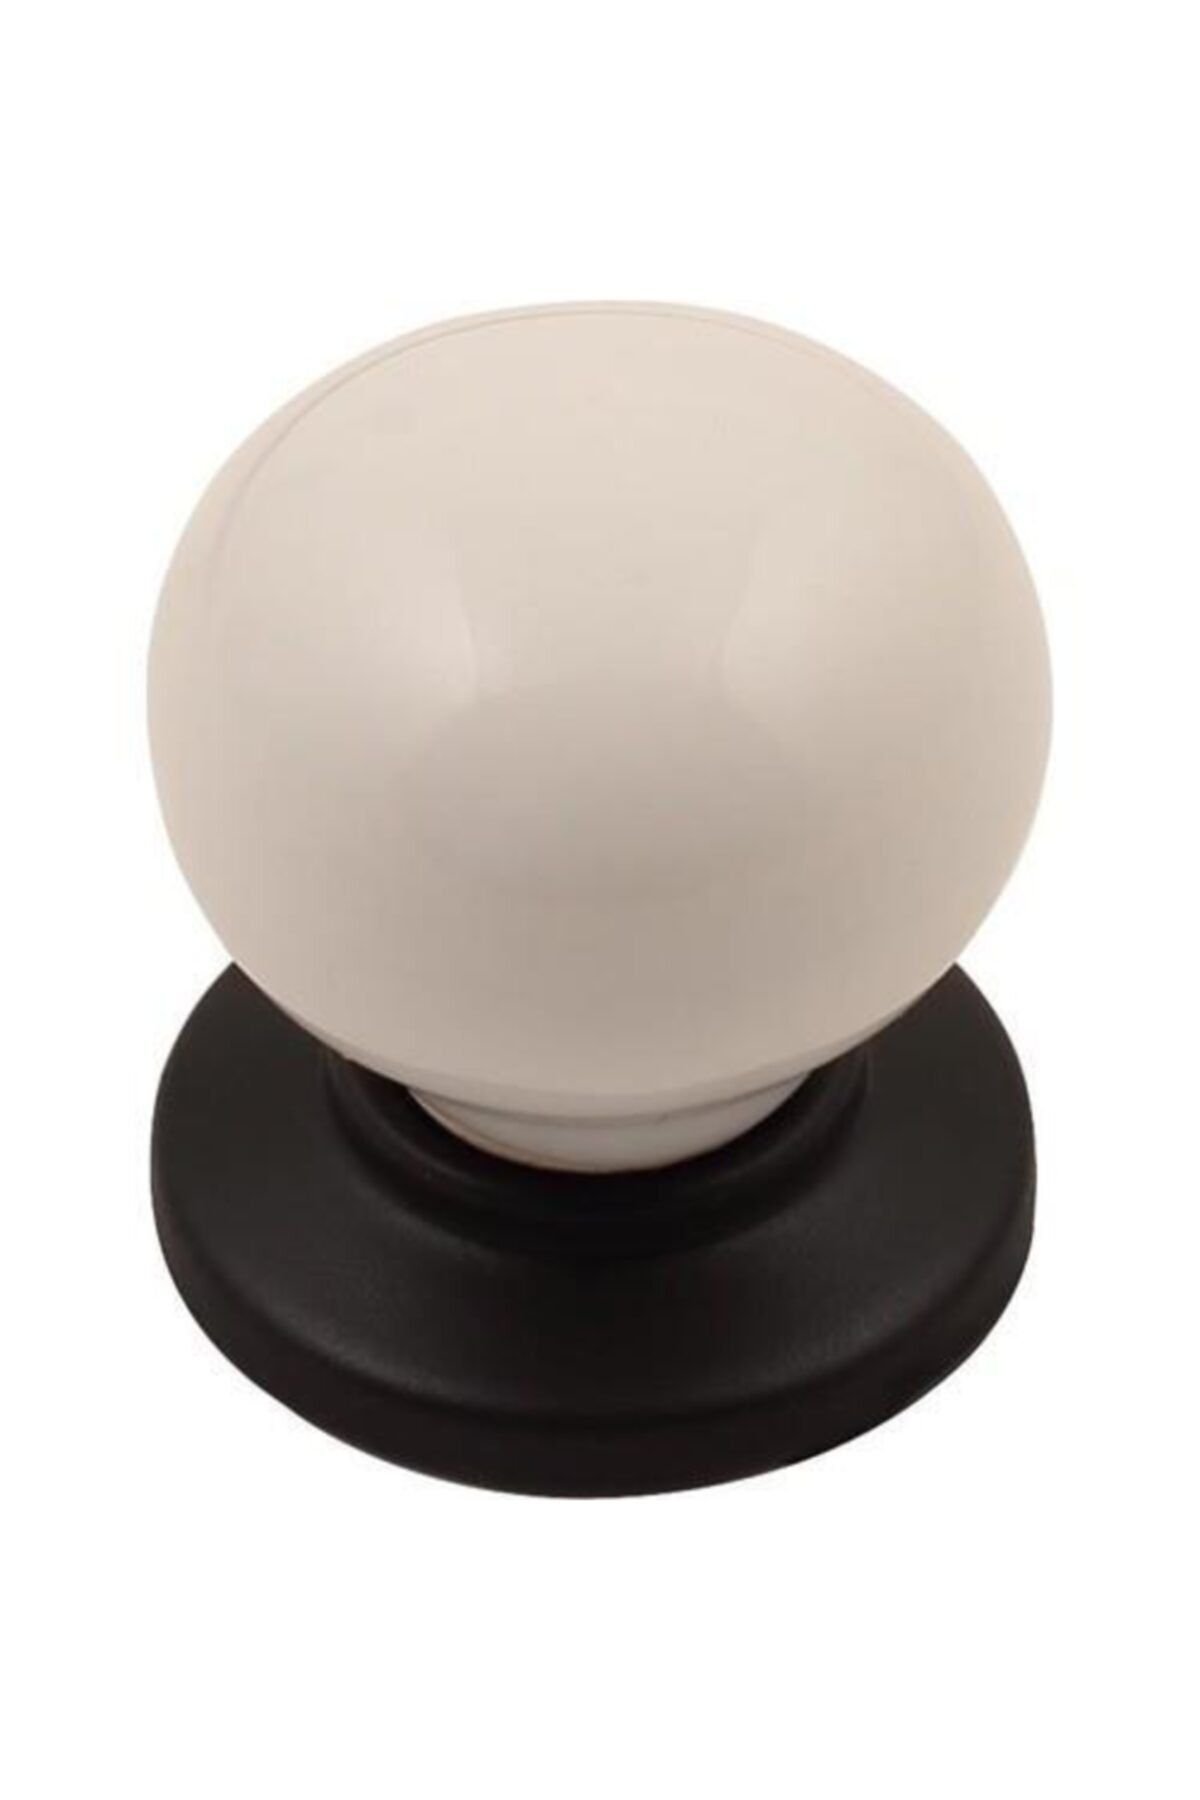 bablife 5 Adet Porselen Görünümlü Misket Düğme Beyaz Siyah Tek Ebat Çekmece Dolap Mobilya Kulpları